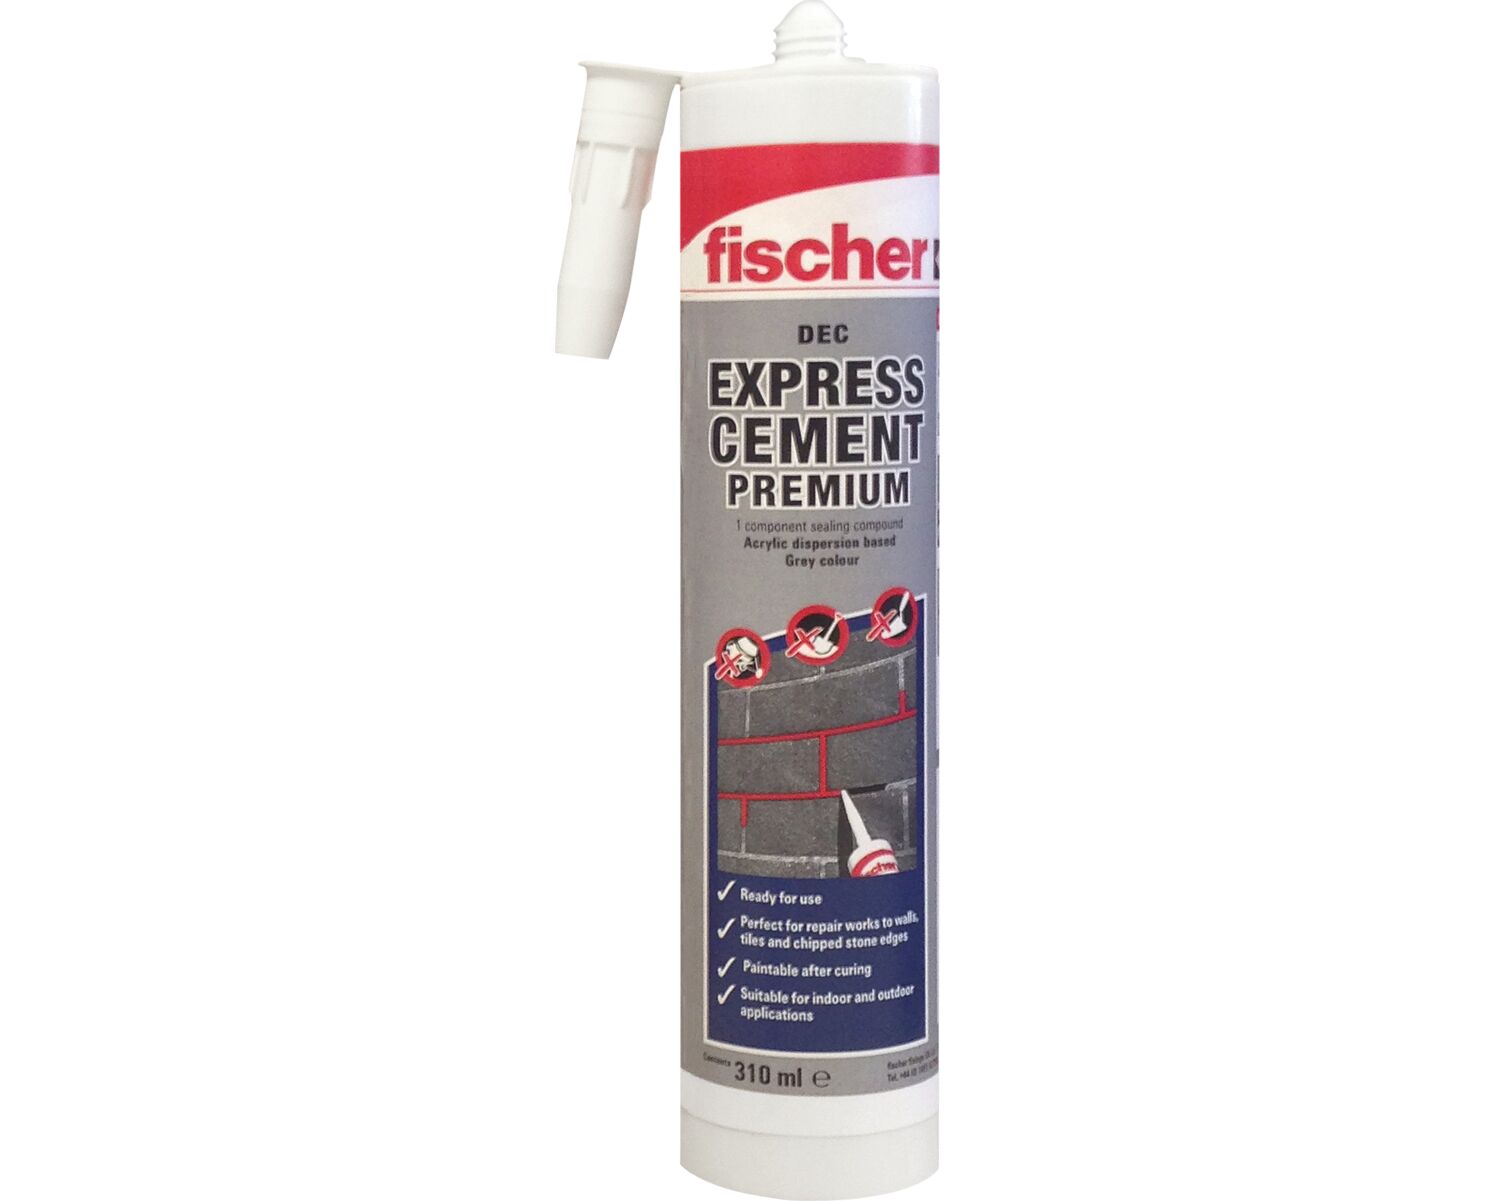 Fischer Express Cement 310ml